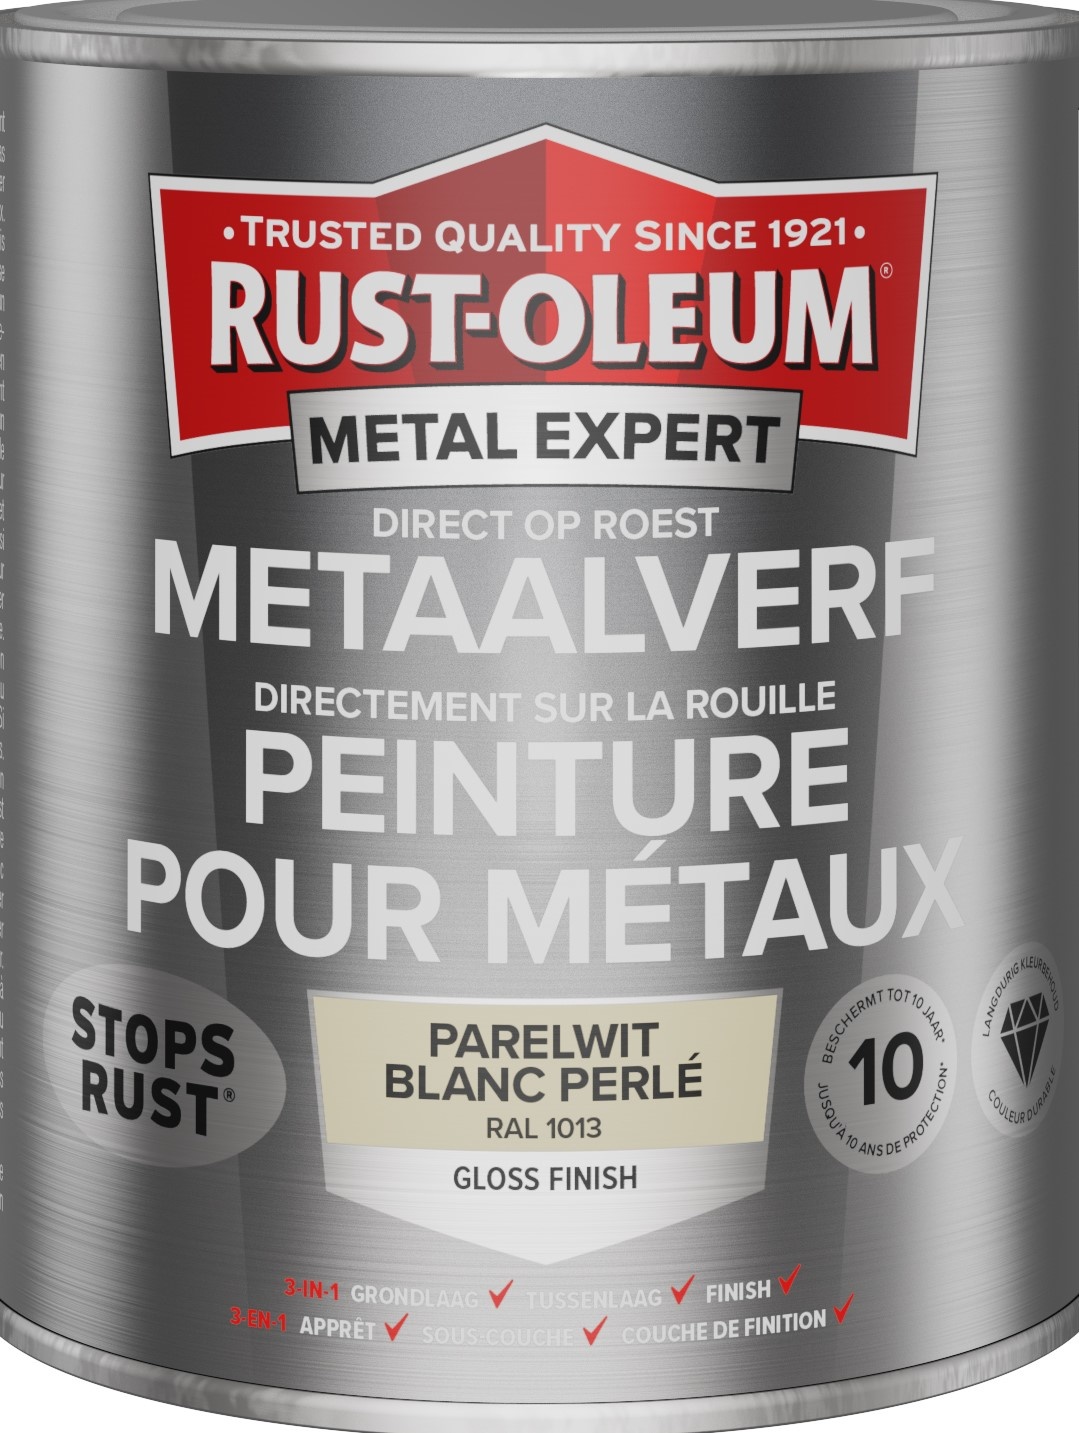 rust-oleum metal expert metaalverf gloss ral 1013 0.75 ltr